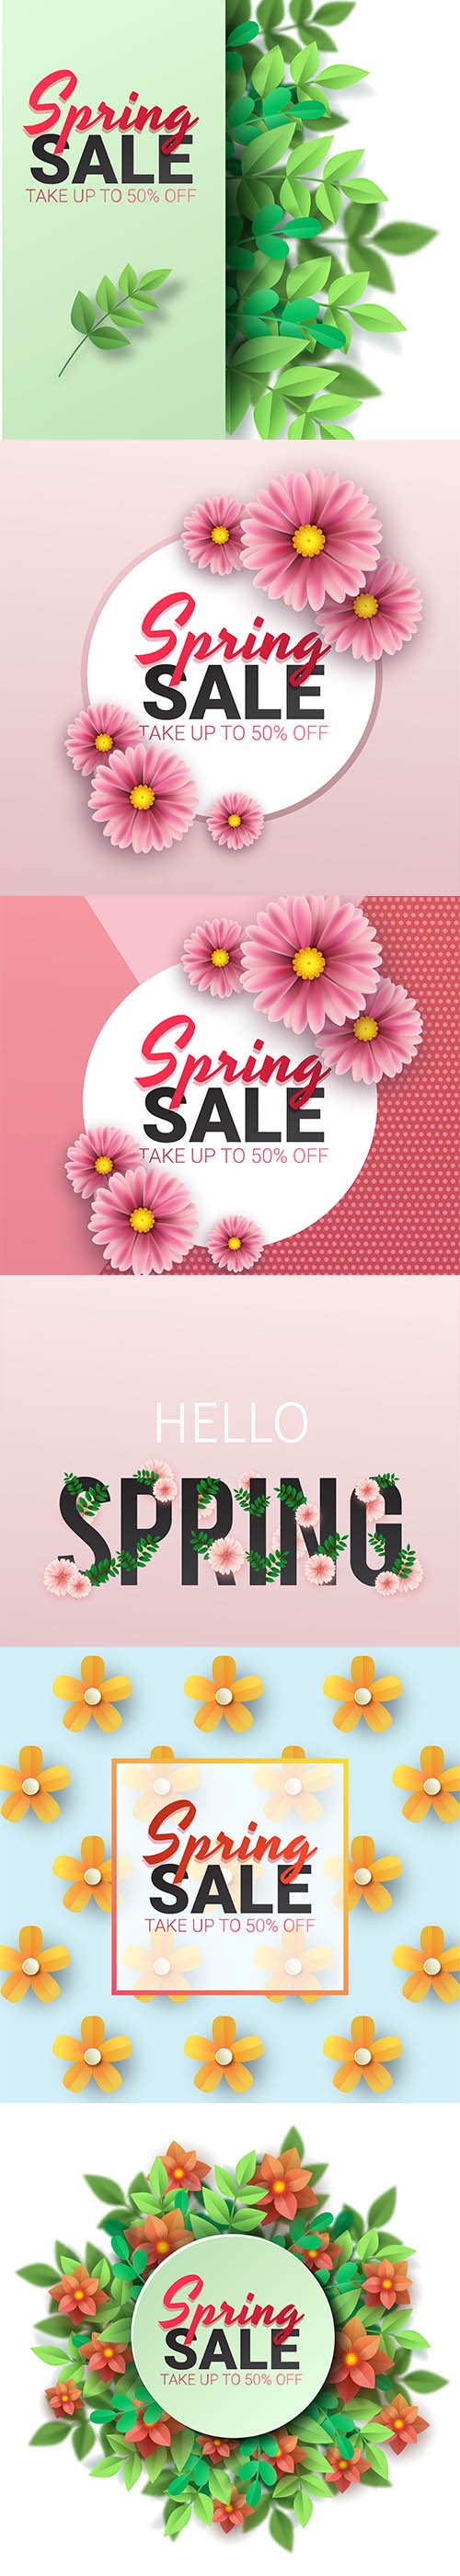 Spring Sale Floral Banner Vector Set